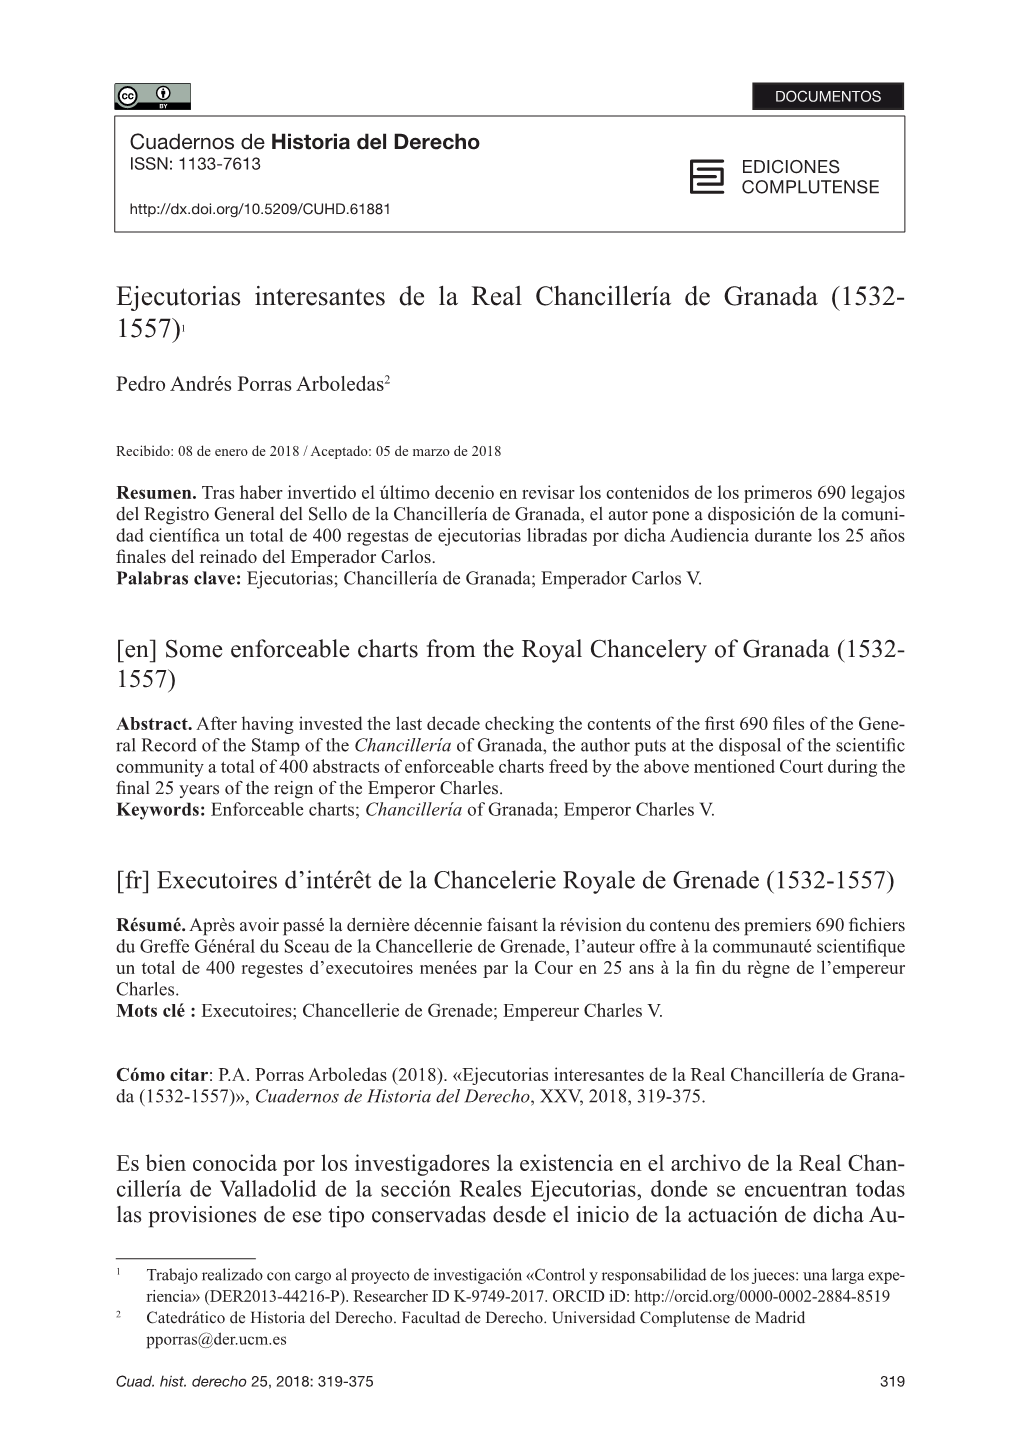 Ejecutorias Interesantes De La Real Chancillería De Granada (1532- 1557)1